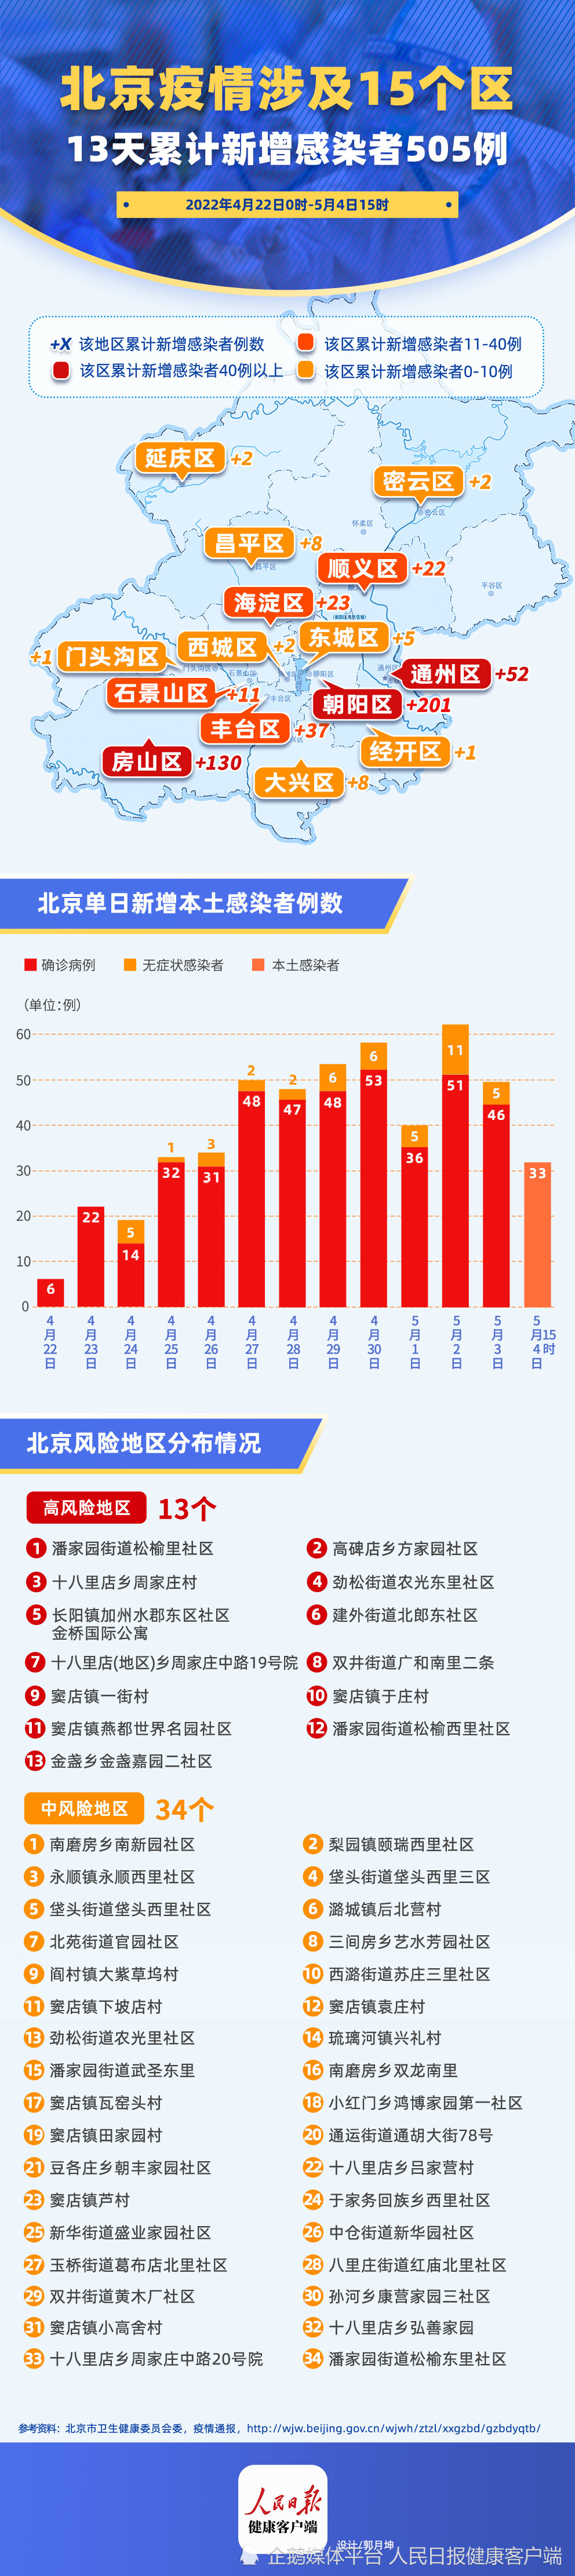 北京市新型冠状病毒肺炎疫情防控工作新闻发布会上提到,截至2022年5月